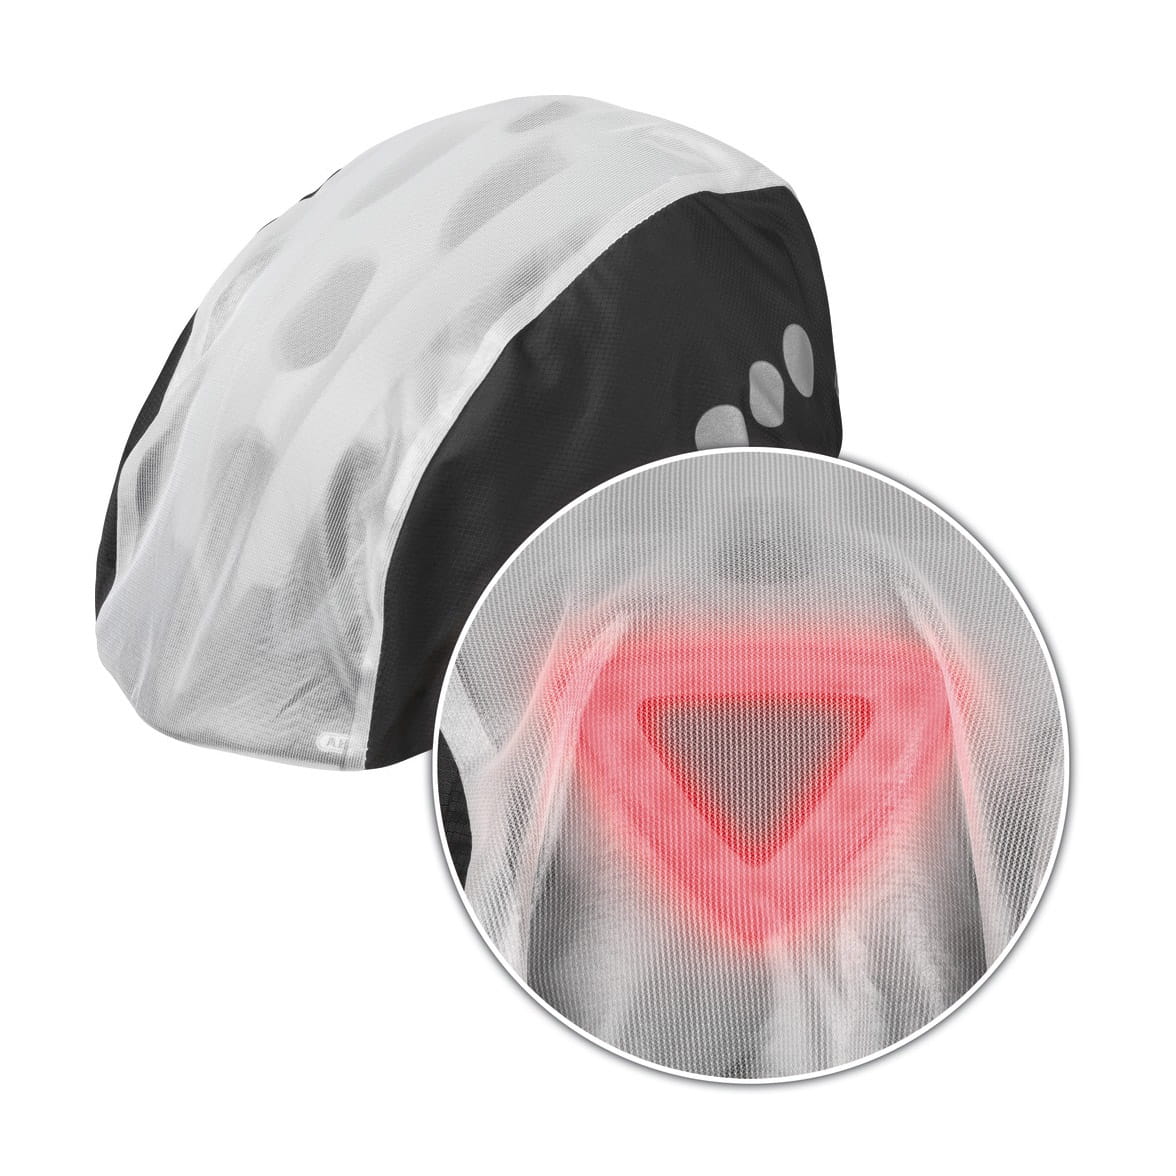 ABUS Regenkappe / Regenschutz Toplight für Helme mit hohem LED Rücklicht